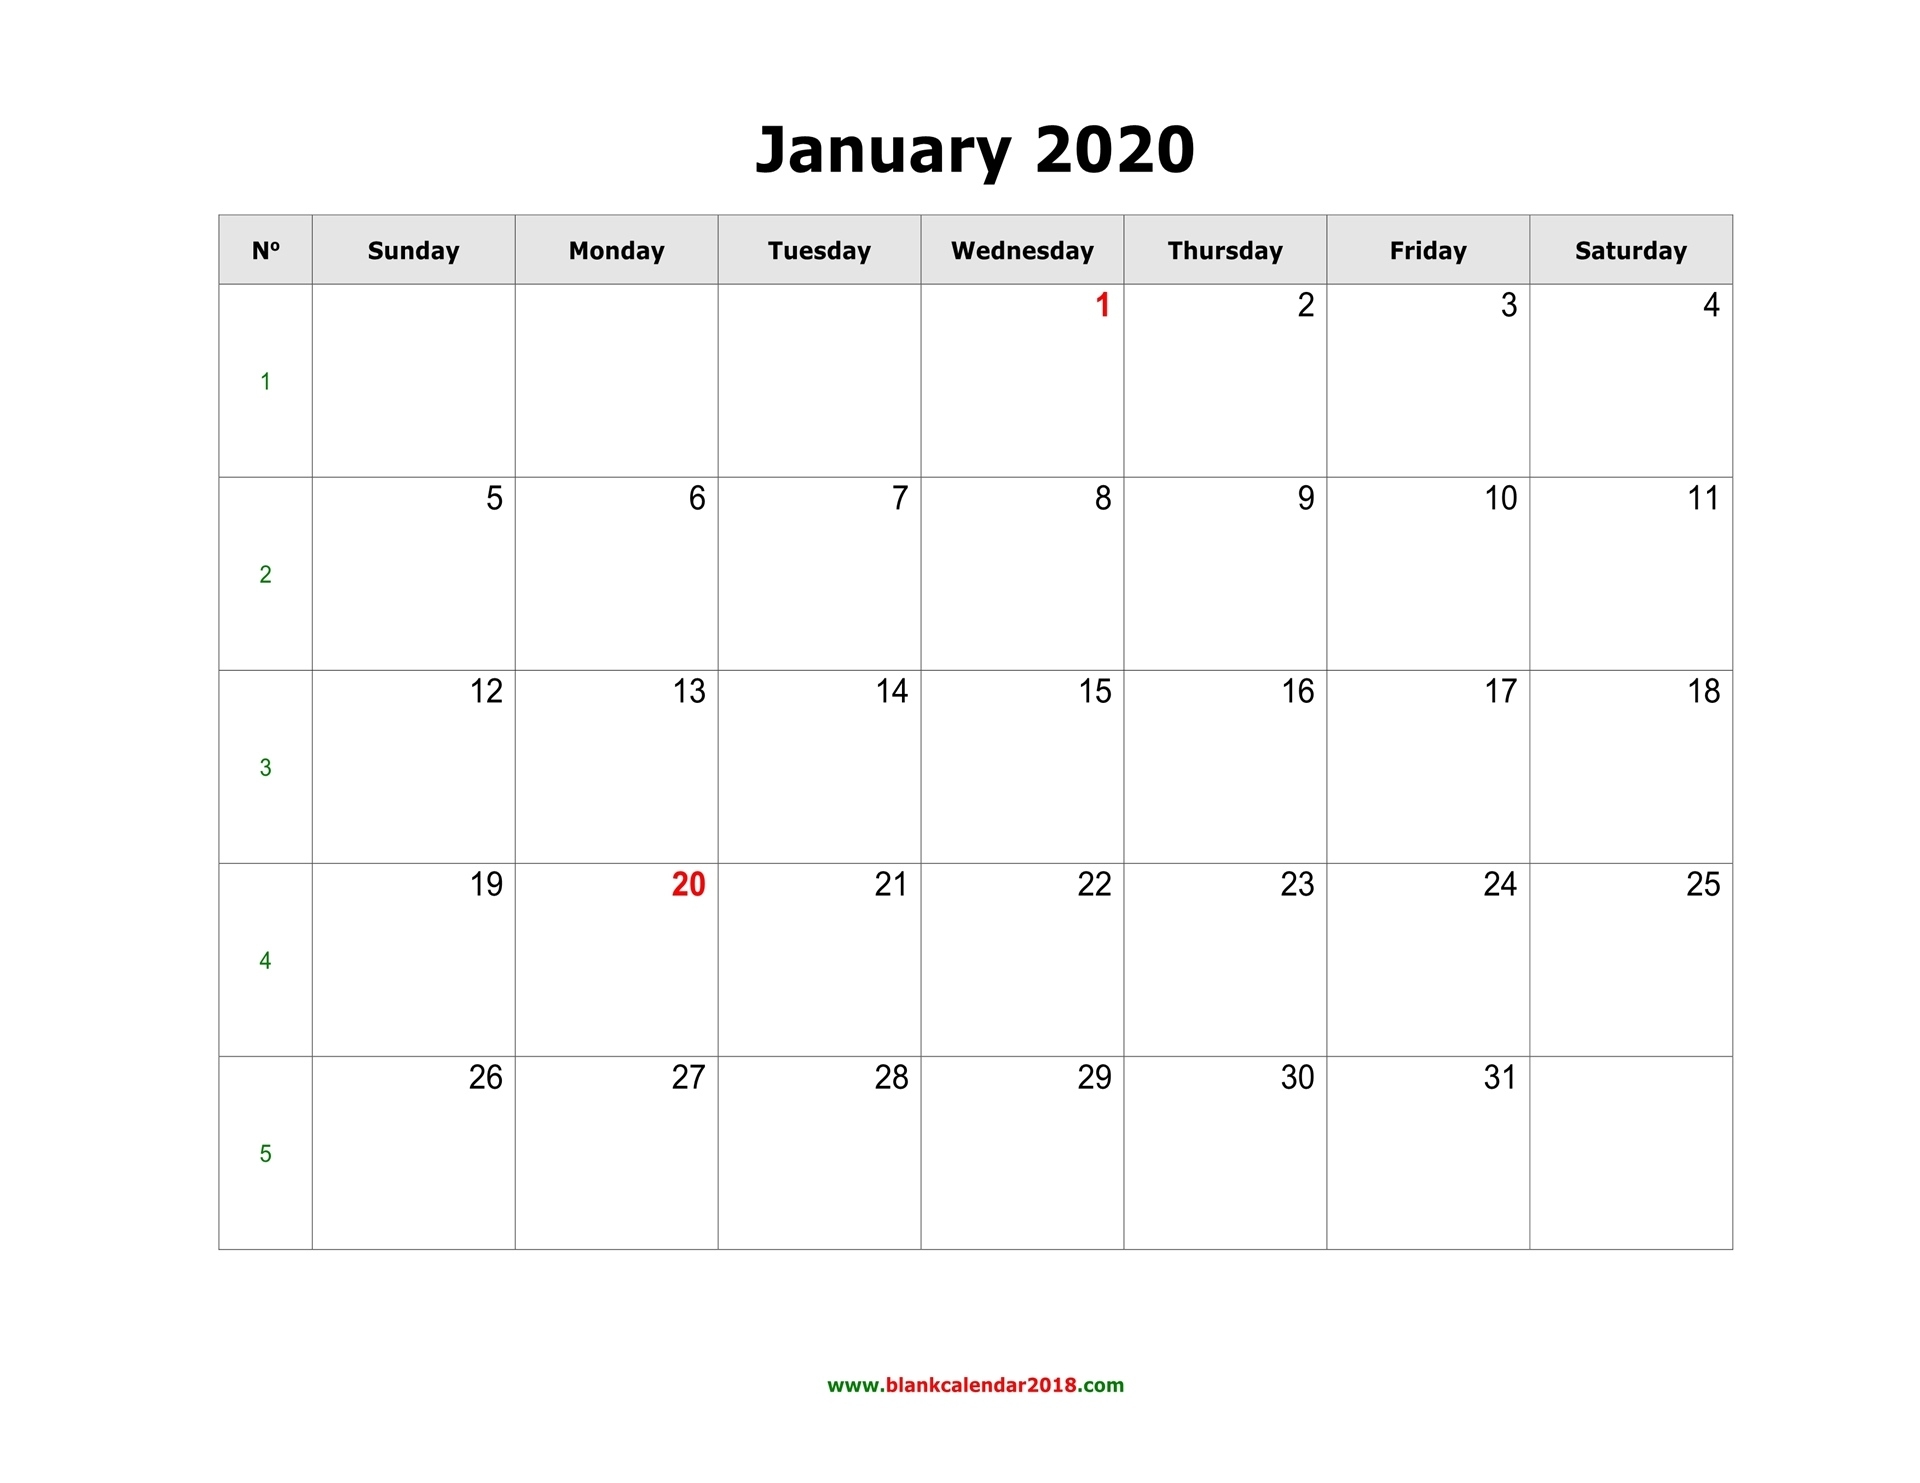 Blank Calendar 2020 Blank Outlook Calendar 2020 With Week Numbers